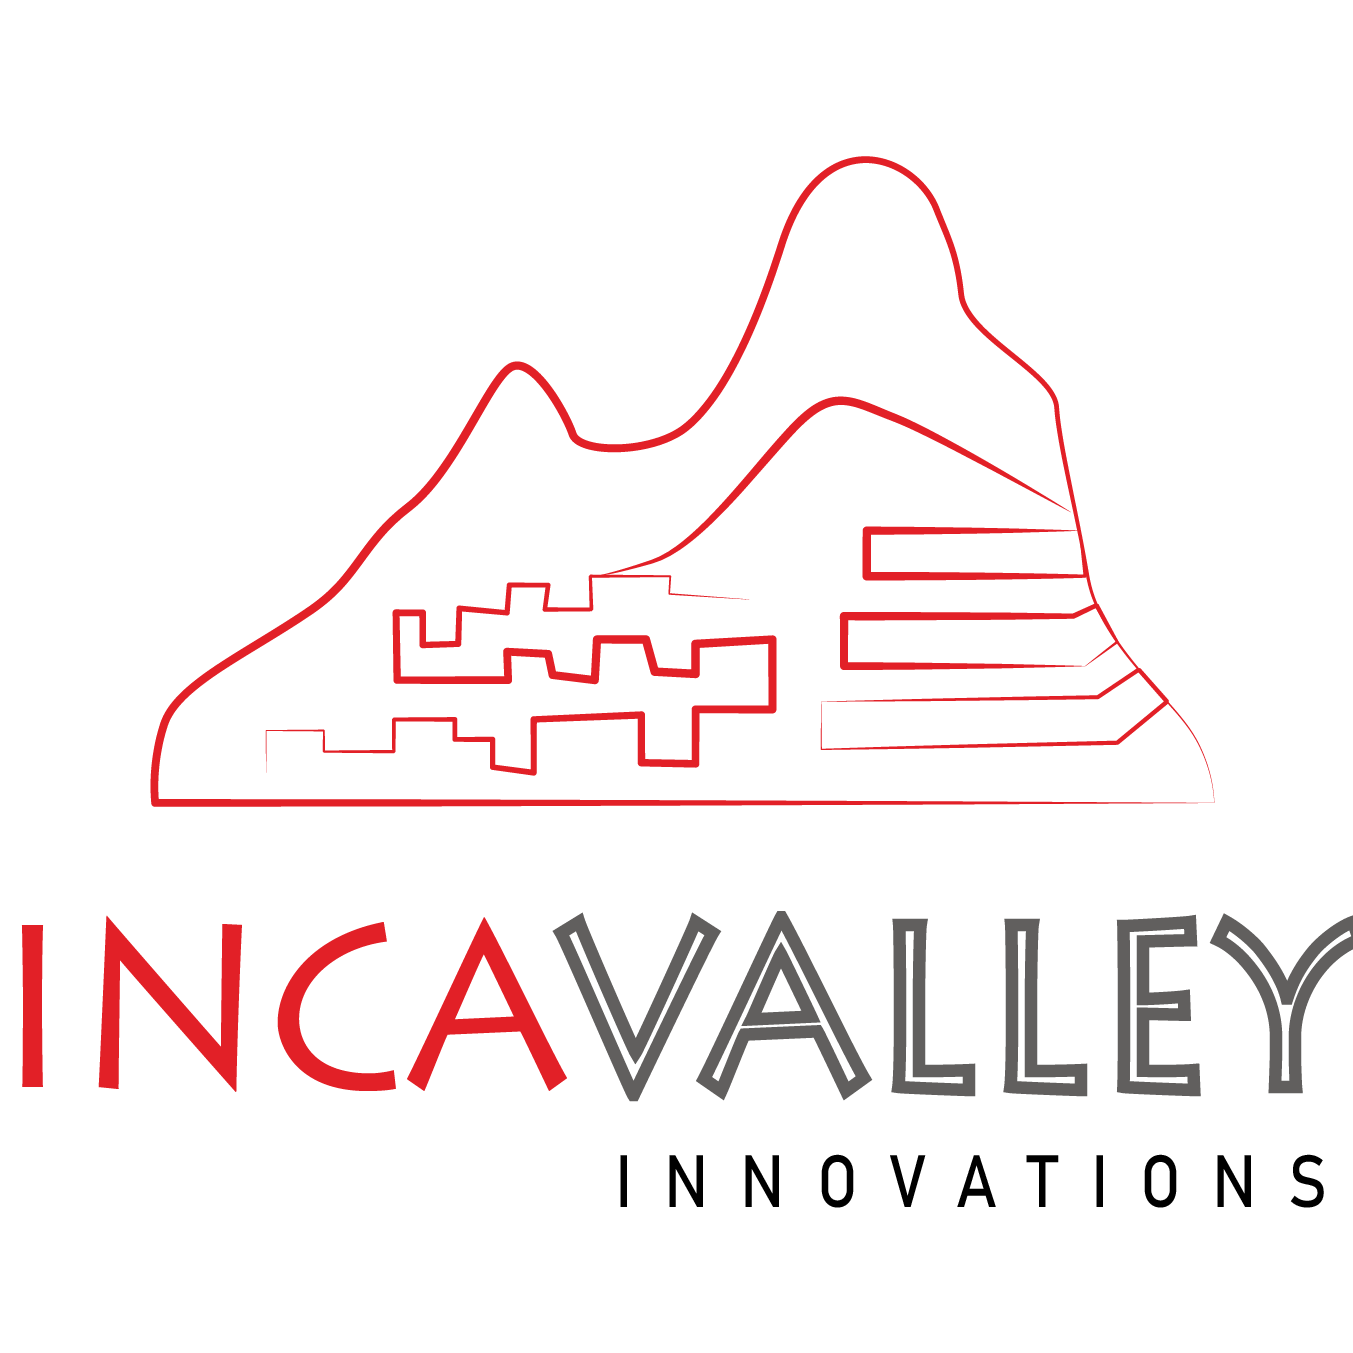 Inca Valley Innovations